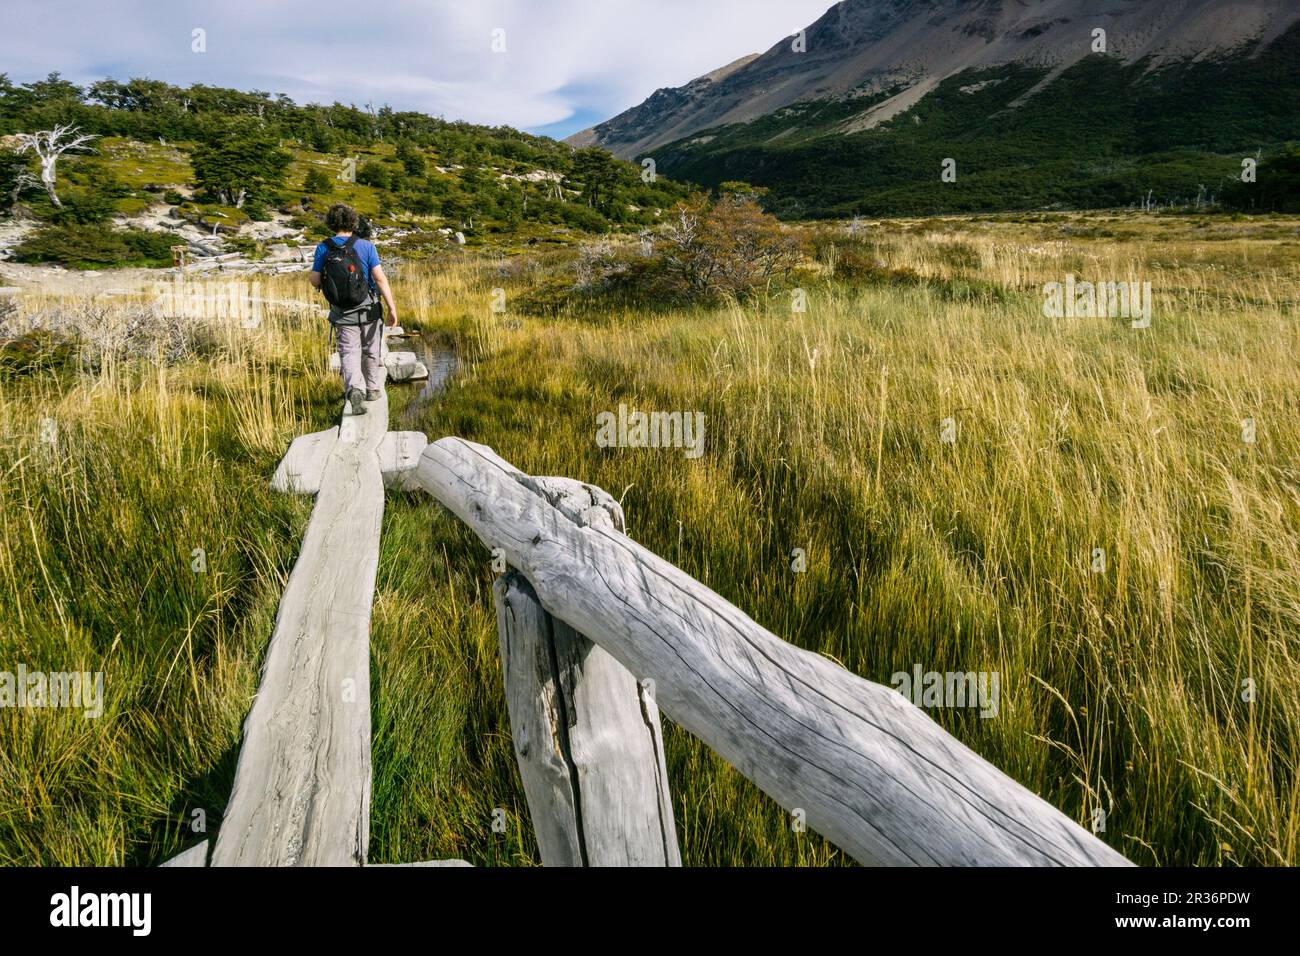 sendero hacia el campamento Poincenot, El Chalten, parque nacional Los Glaciares, republica Argentina,Patagonia, cono sur, South America. Stock Photo